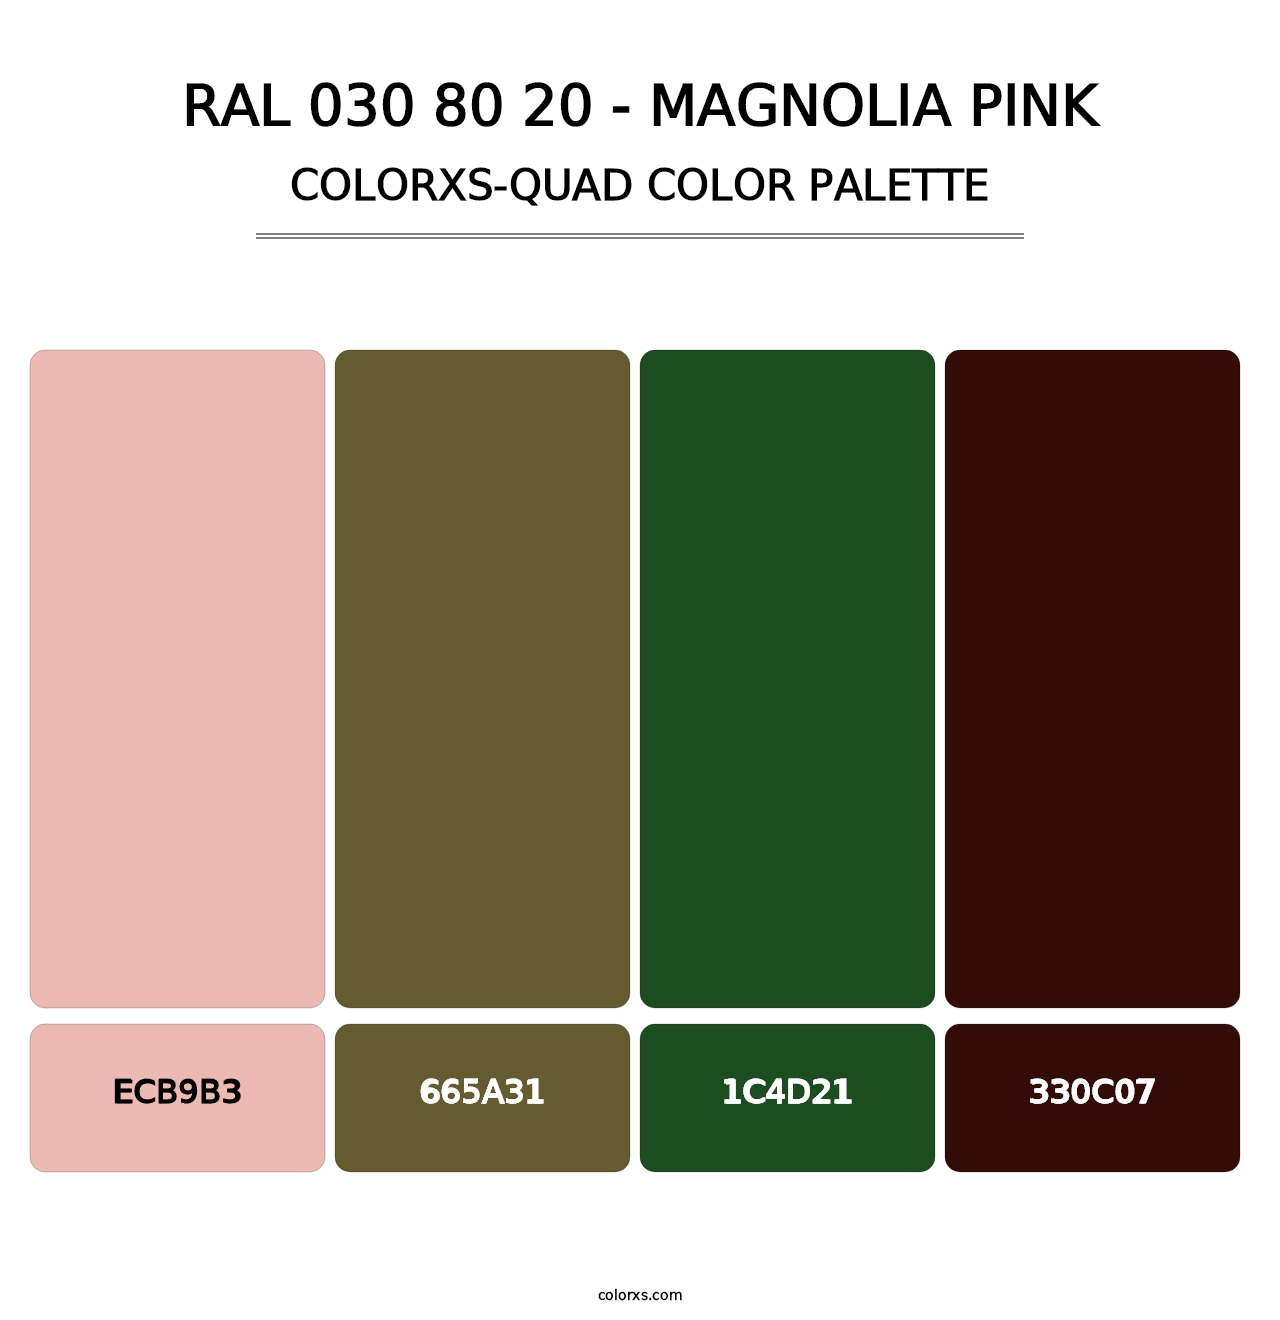 RAL 030 80 20 - Magnolia Pink - Colorxs Quad Palette